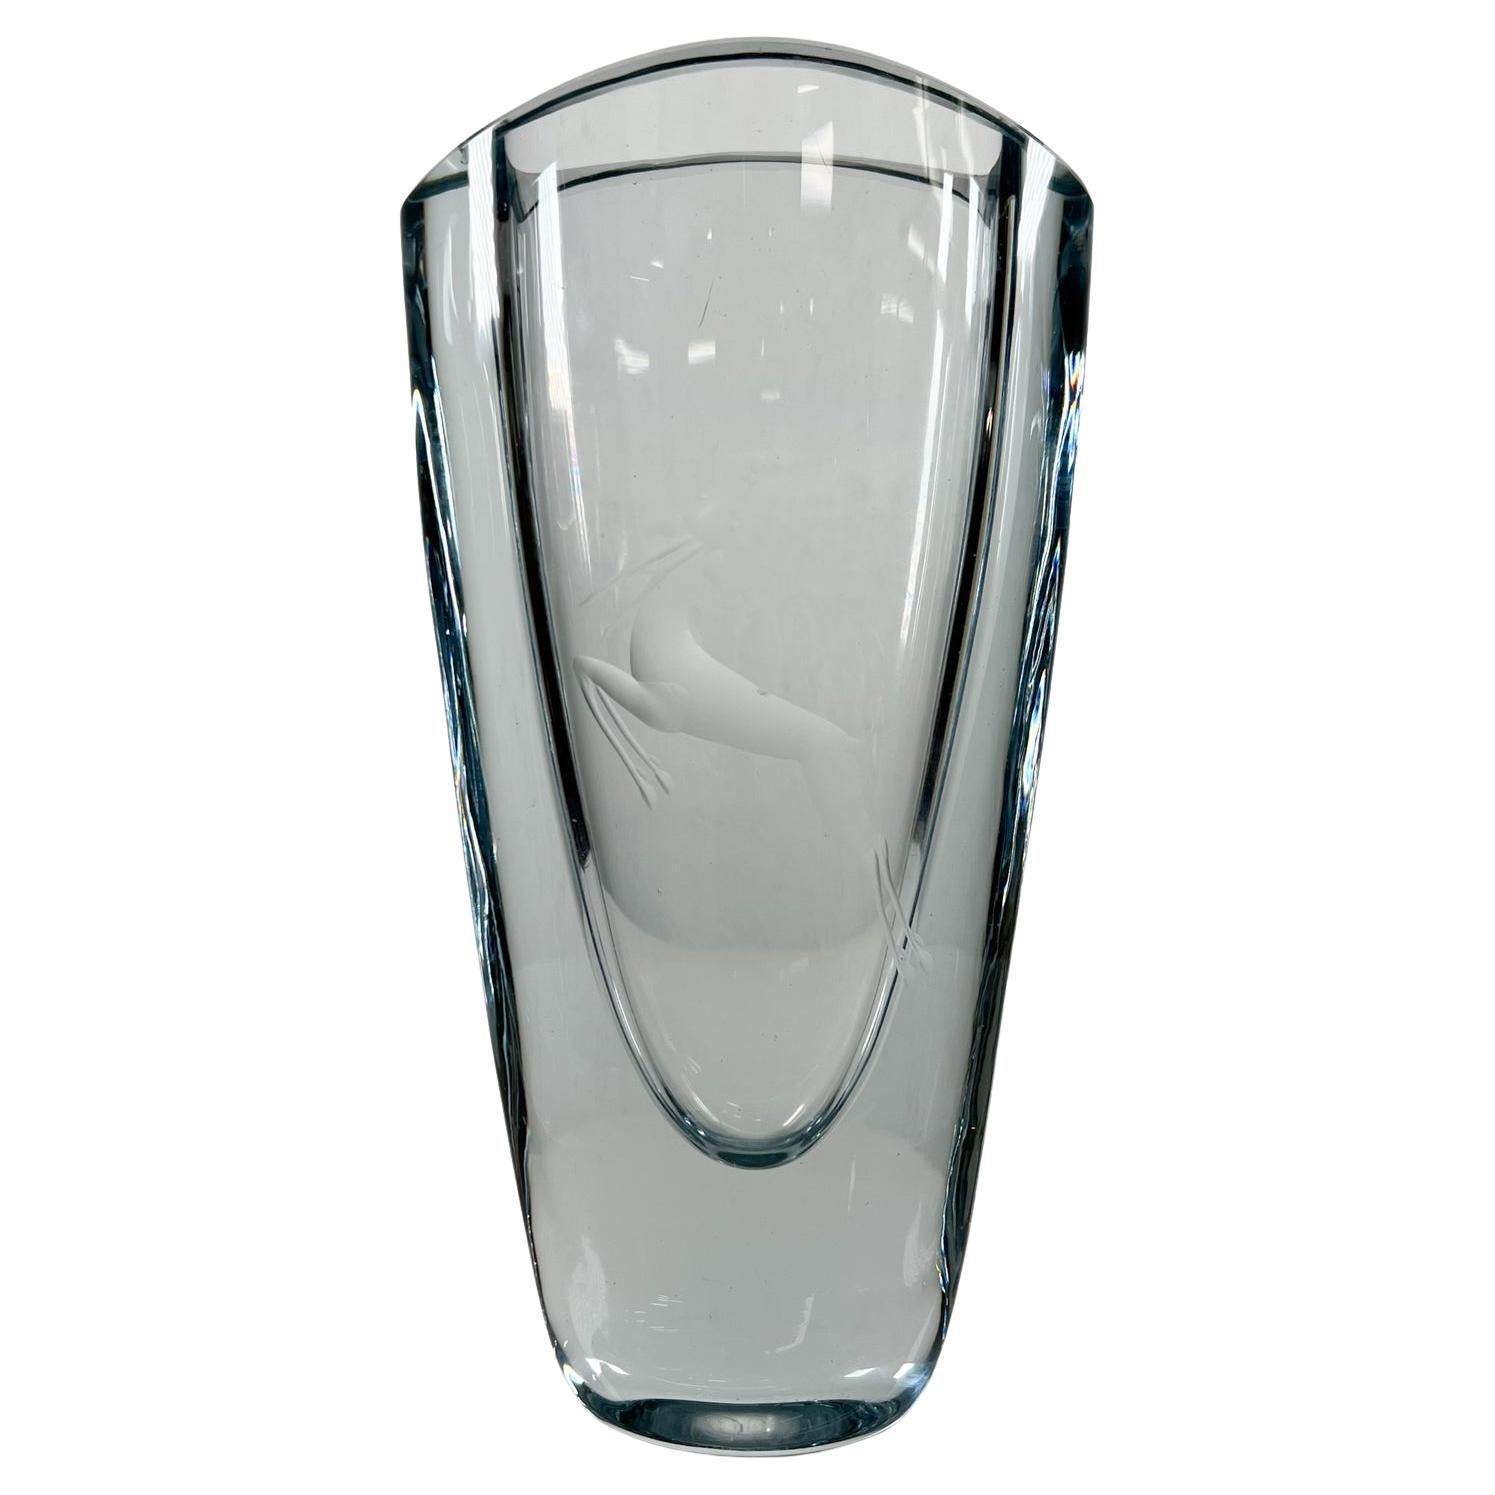 1950s Strombergshyttan vase gazelle cristal Art glass Gunnar Nyland Sweden
Mesures : 3,13 D x 4,5 L x 9,25 H
Vase vintage en verre suédois fait à la main avec gravure de gazelle.
Petite entaille sur la partie intérieure supérieure. Difficile à